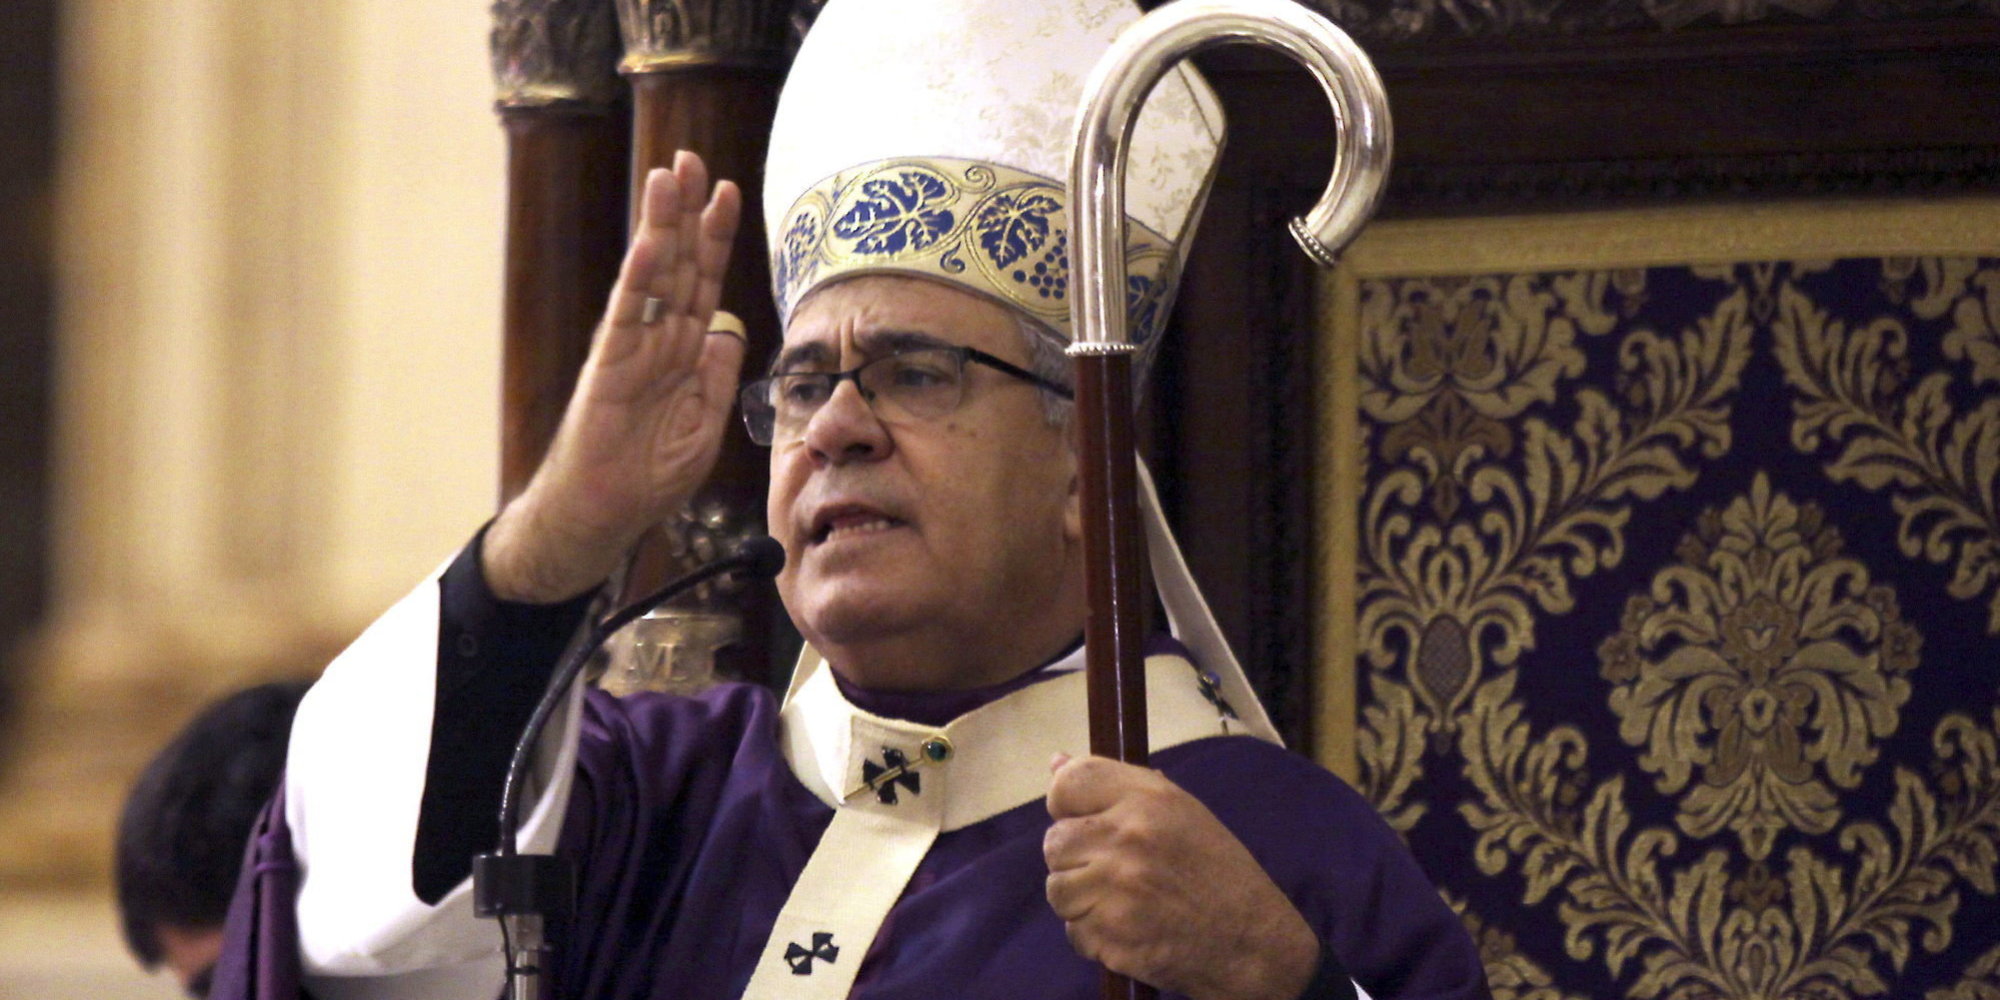 arzobispo-de-granada-aseguro-que-el-sexo-oral-no-es-pecado-si-se-hace-pensando-en-jesus